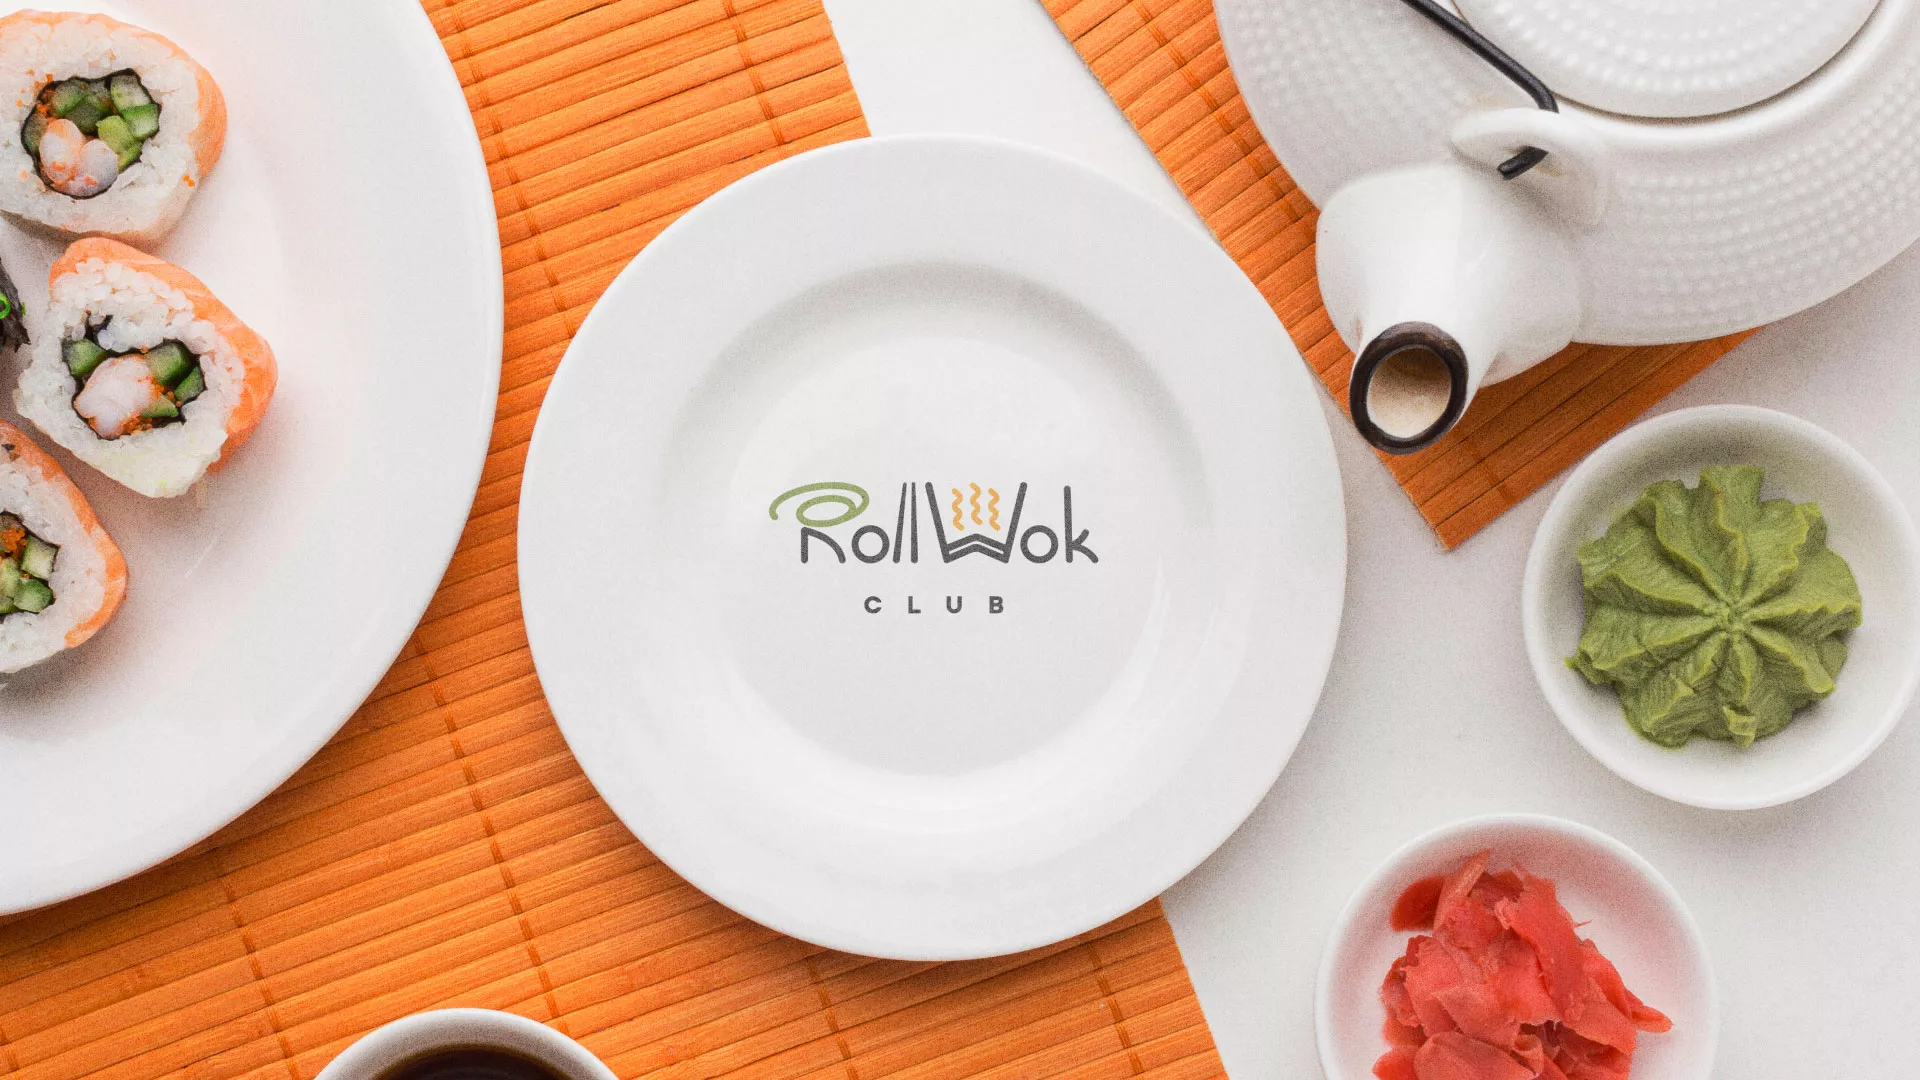 Разработка логотипа и фирменного стиля суши-бара «Roll Wok Club» в Камызяке